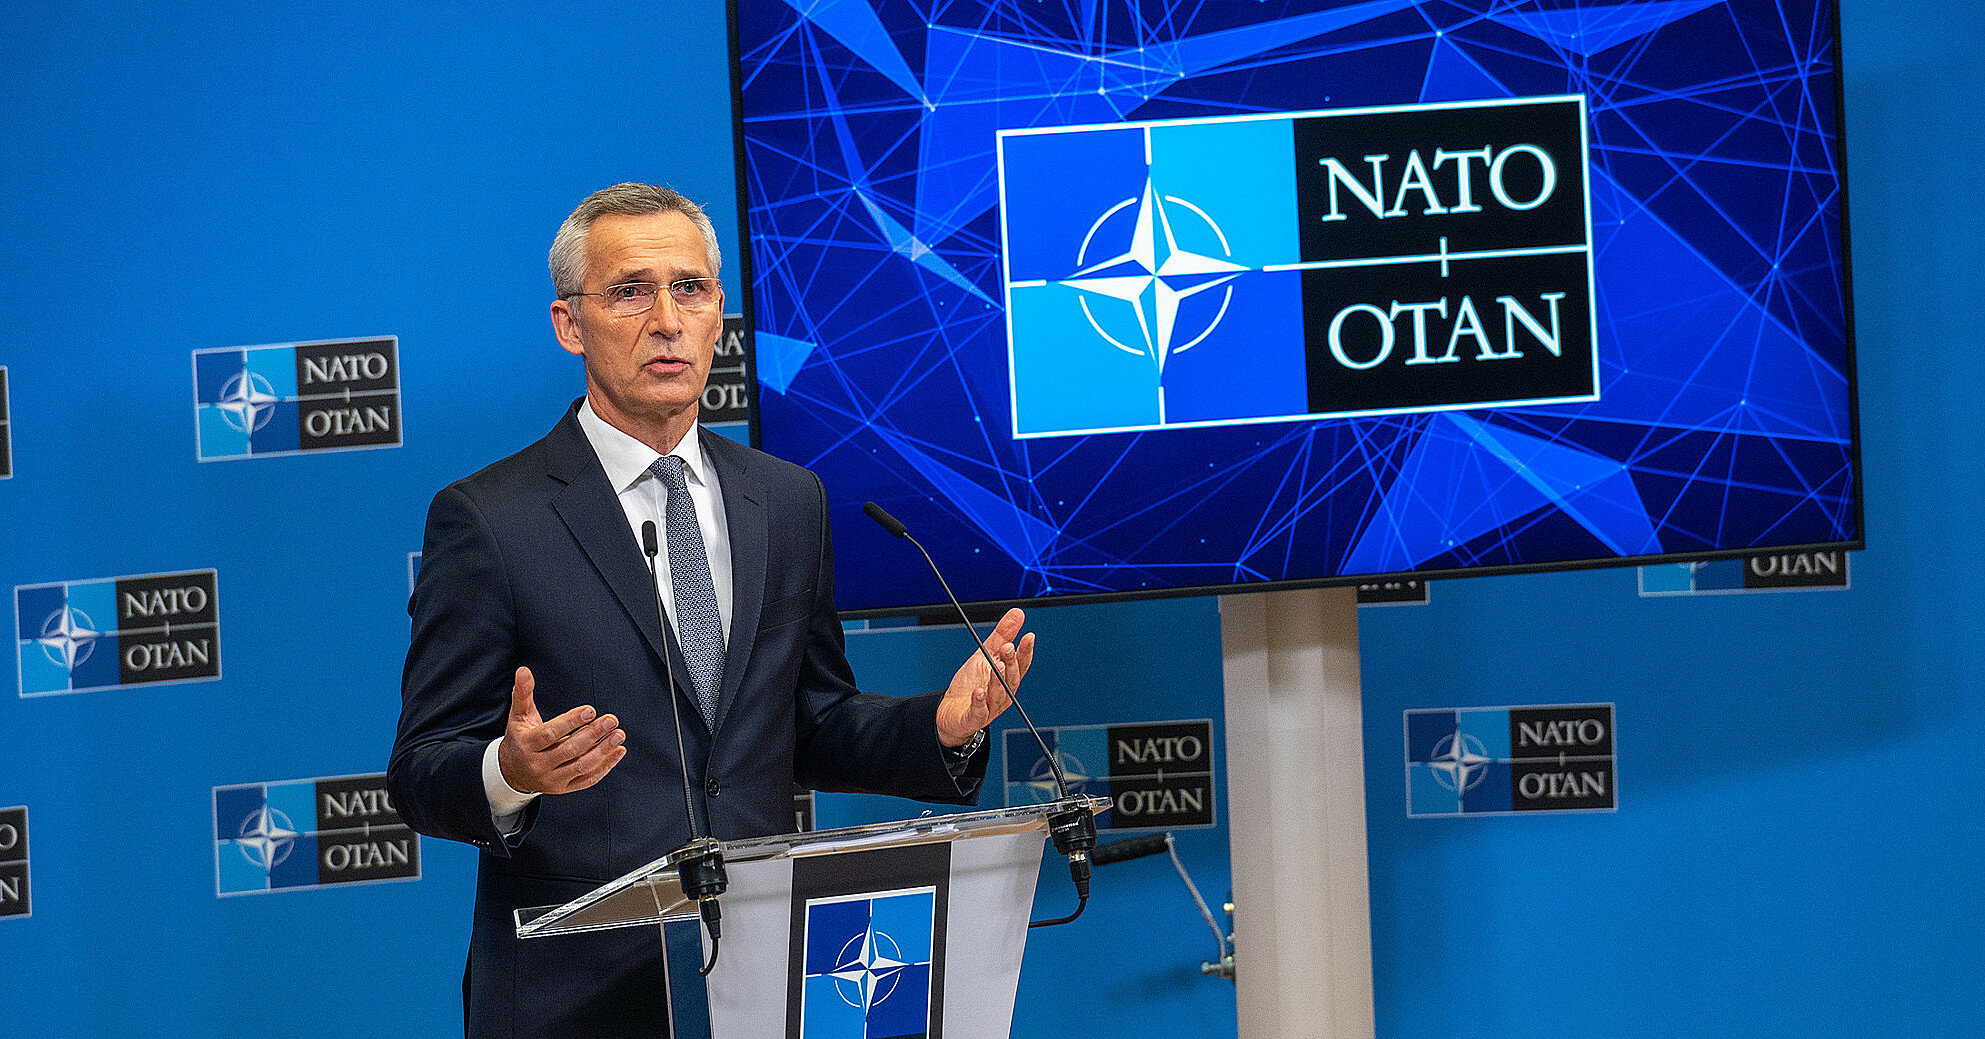 НАТО не давало обещаний не расширяться - Столтенберг